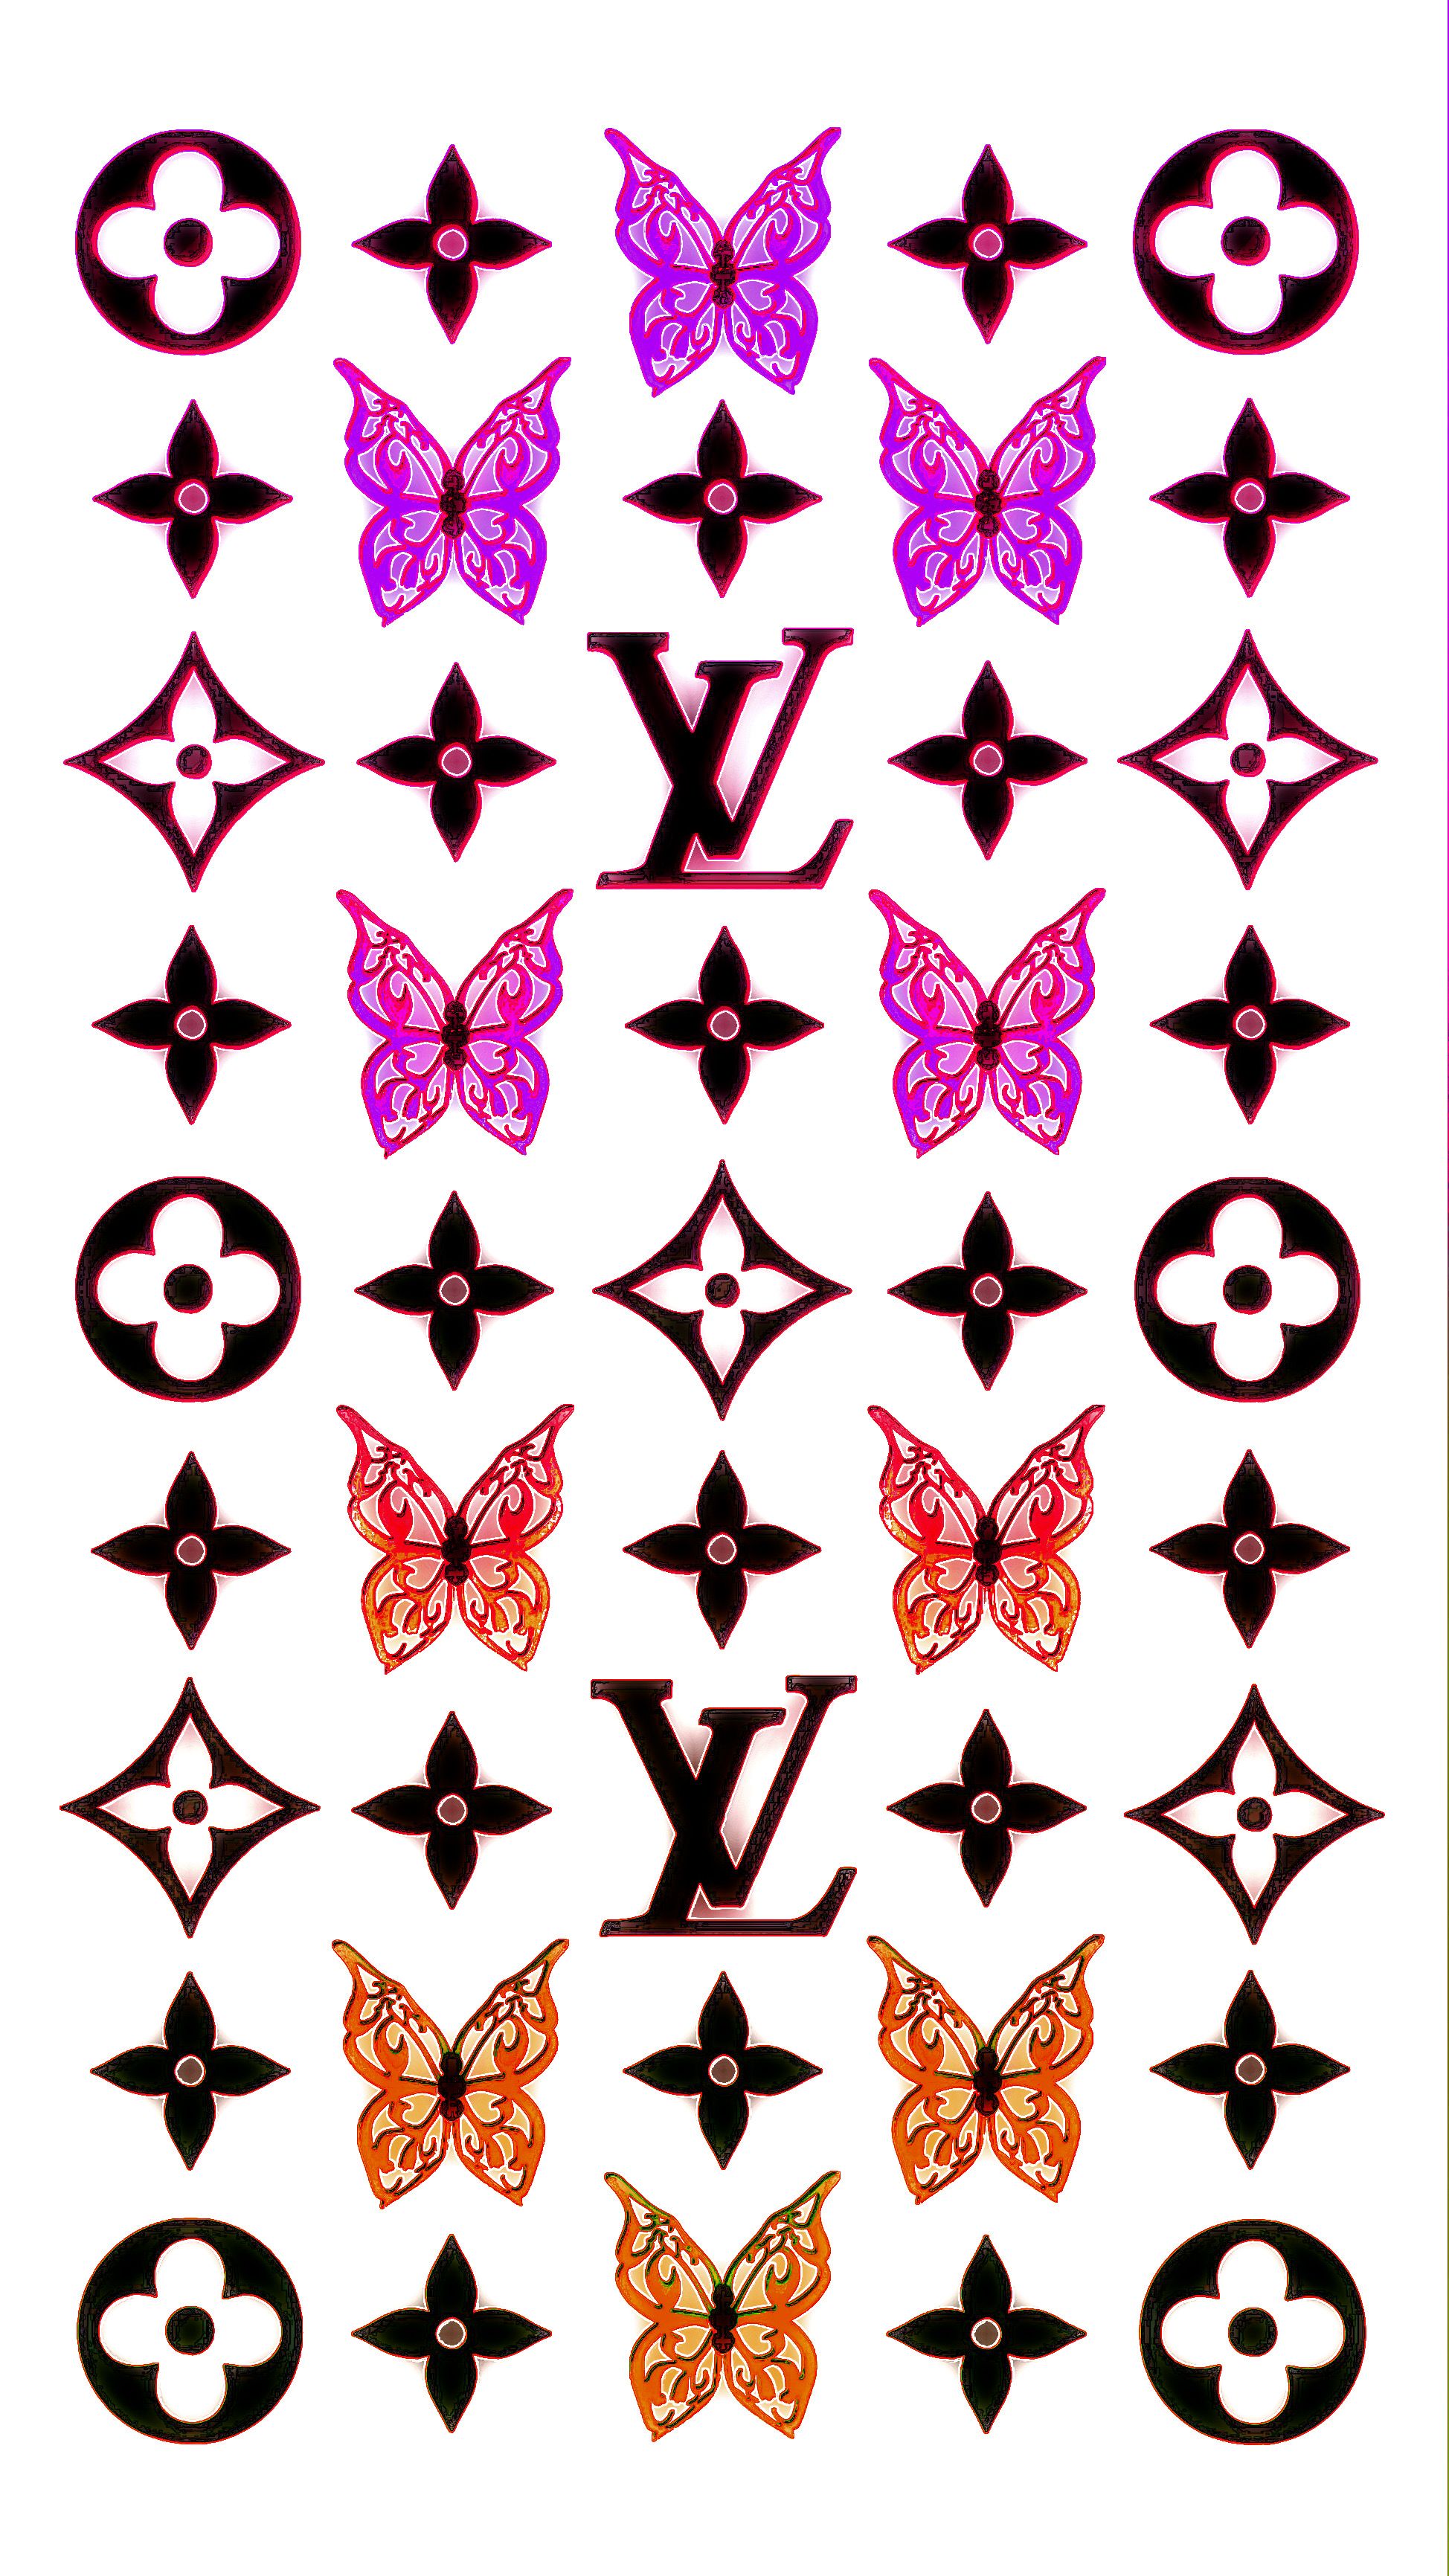 LV wallpaper VIBEZZZ  Butterfly wallpaper iphone, Cute patterns wallpaper,  Edgy wallpaper